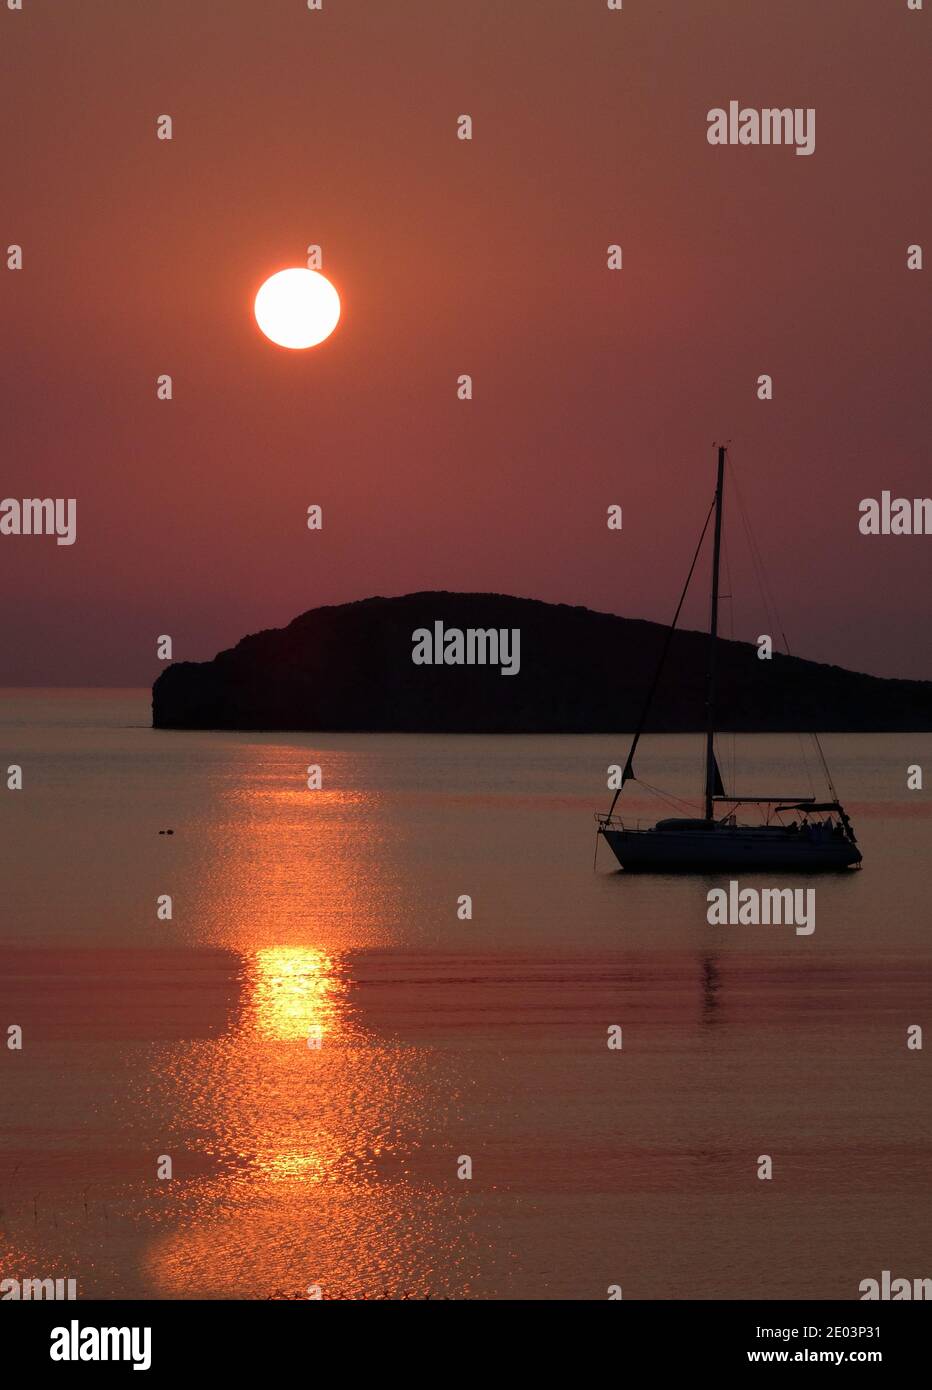 Coucher de soleil sur la plage de Plati , Myrina, l'île de Lemnos dans les îles grecques avec vue sur Ormos Vatopediou , la montagne Athos en arrière-plan Banque D'Images